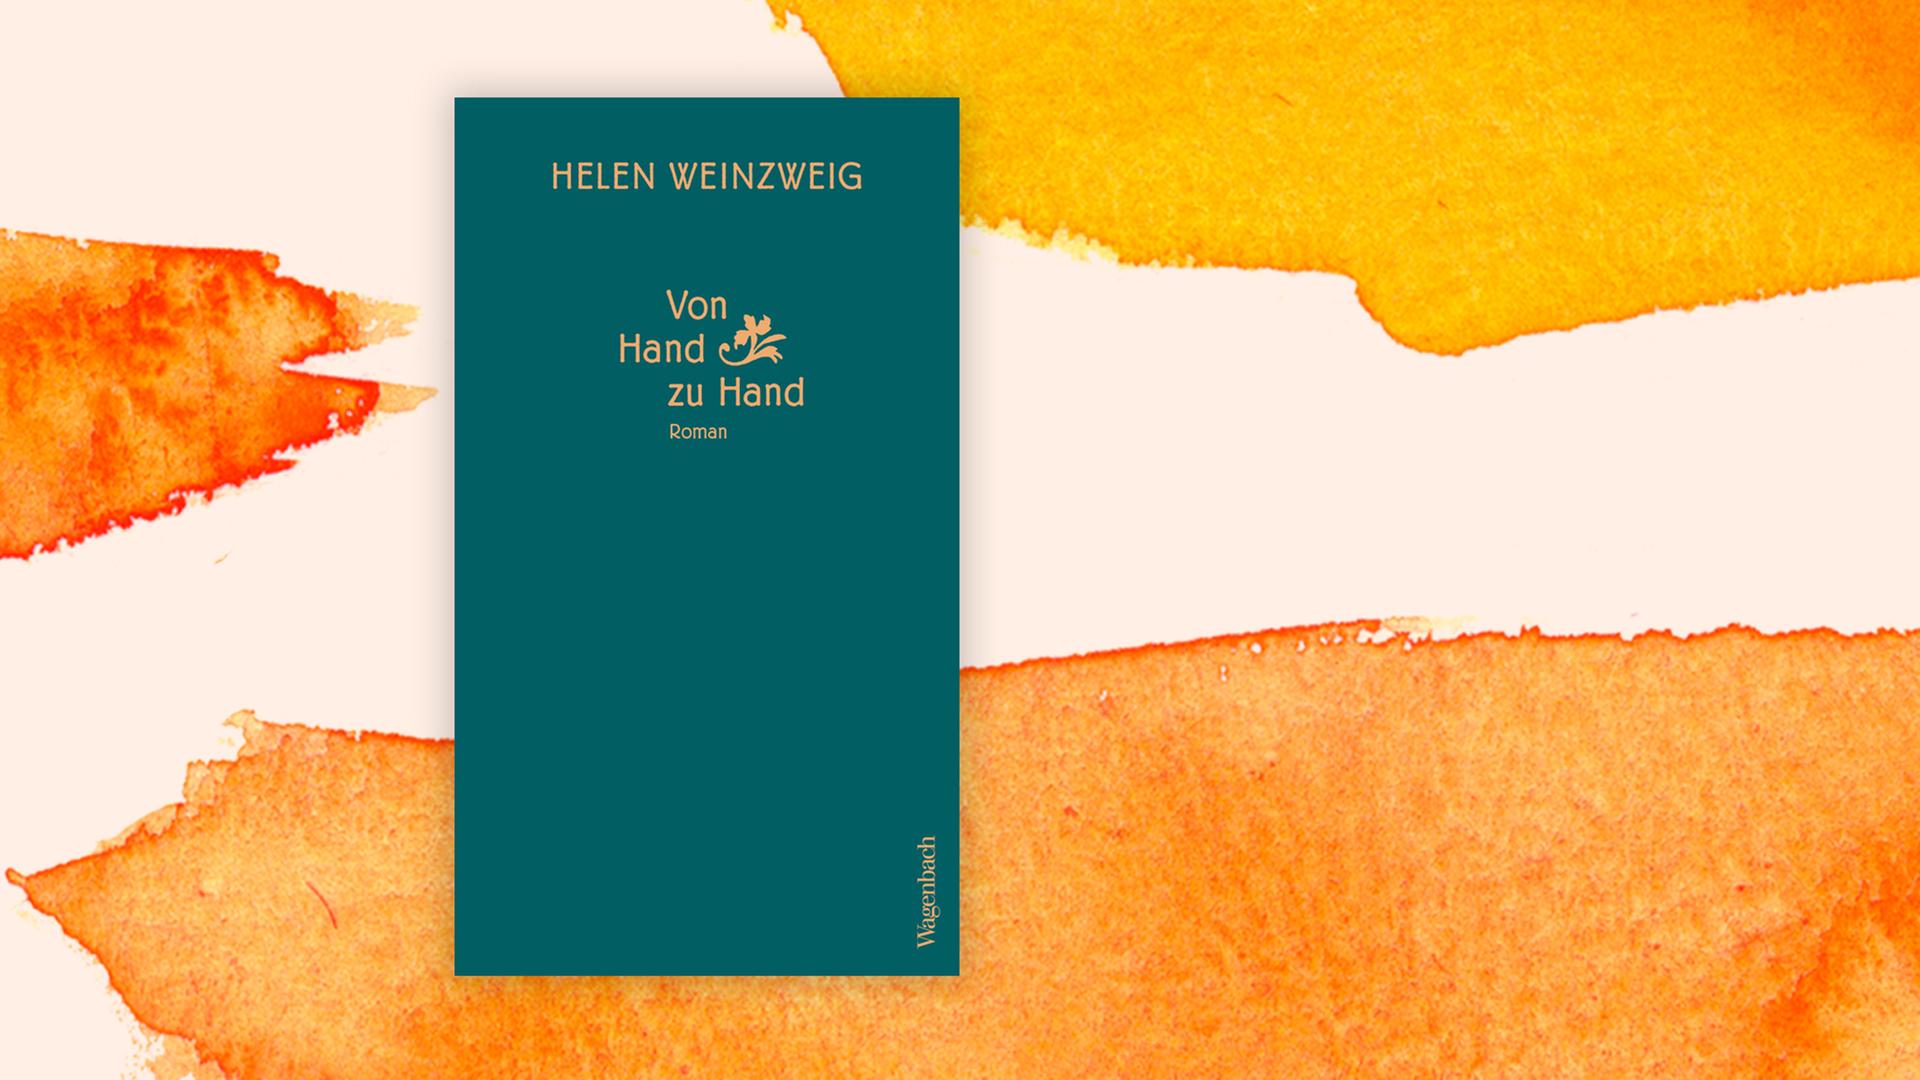 Cover des Buchs "Von Hand zu Hand" von Helen Weinzweig